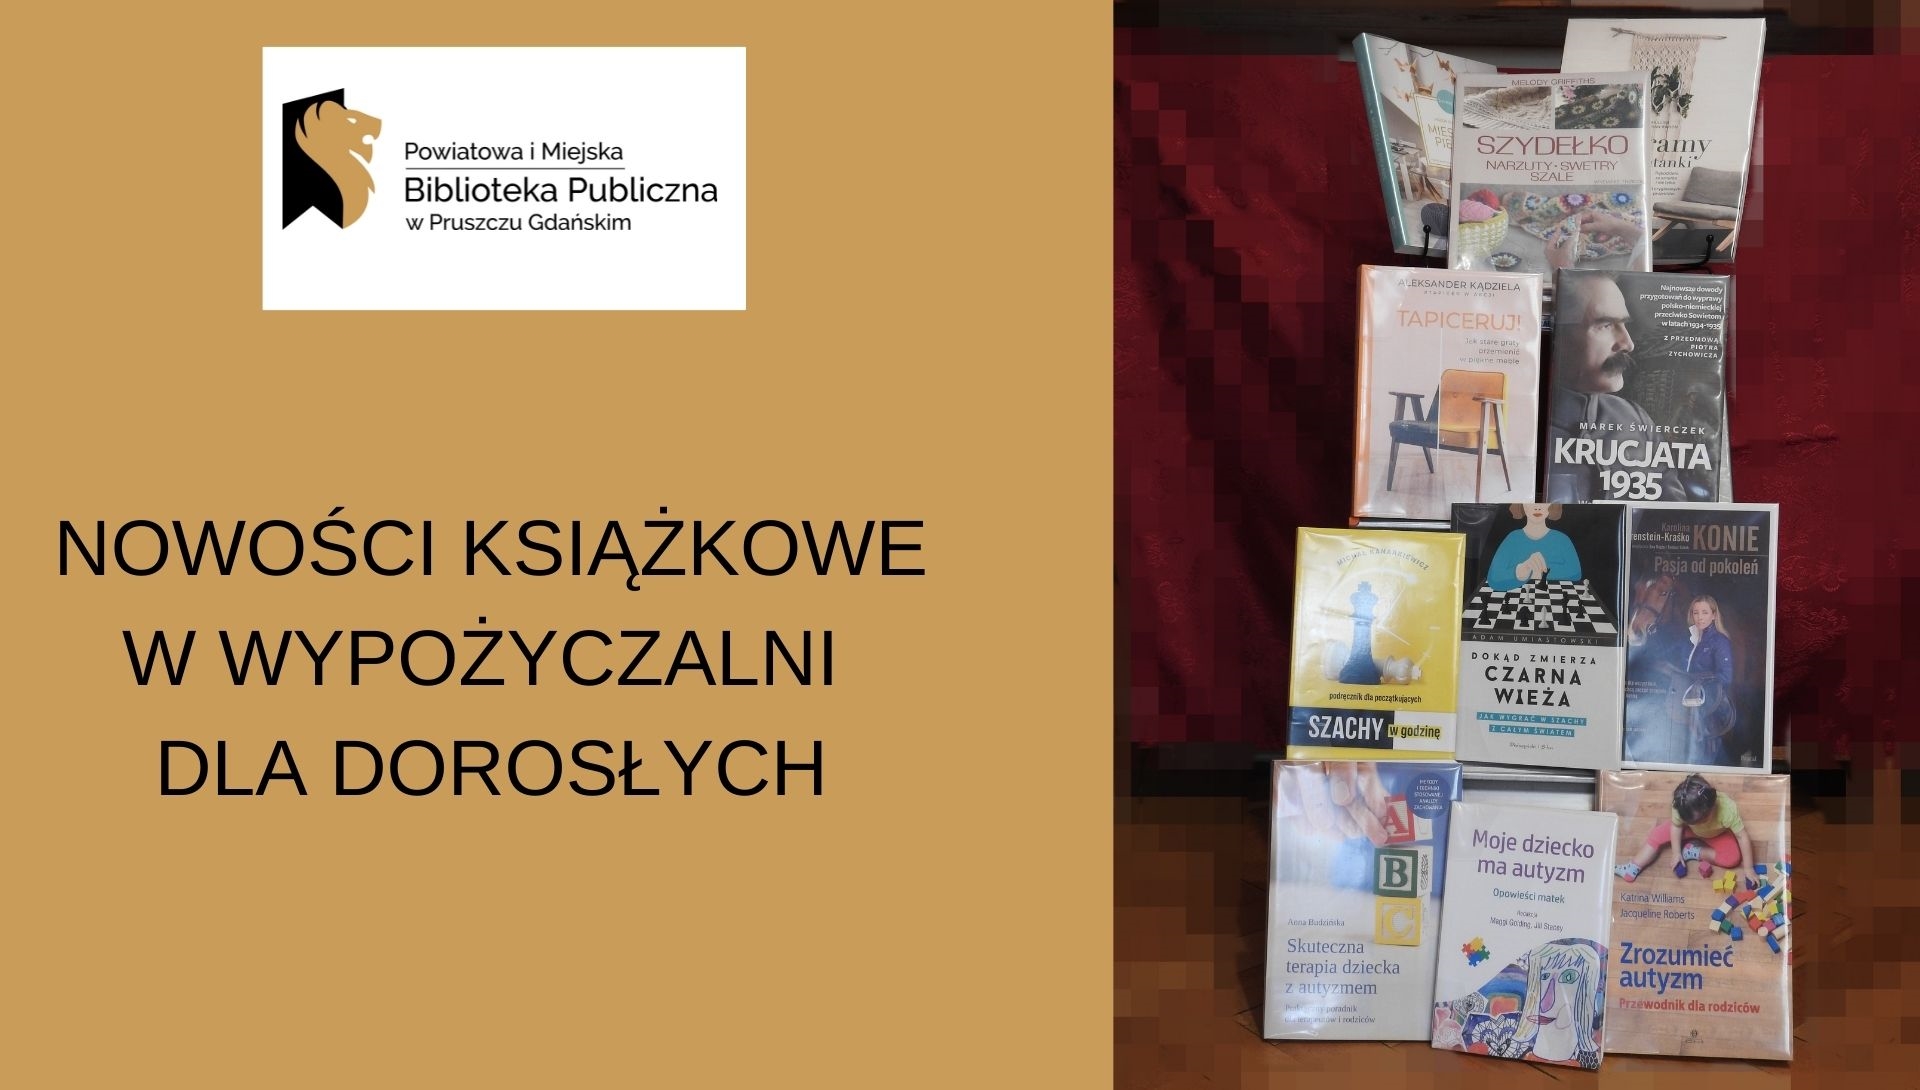 Napisy: Nowości książkowe w wypożyczalni dla dorosłych, Powiatowa i Miejska Biblioteka Publiczna w Pruszczu Gdańskim - logotyp, okładki książek.